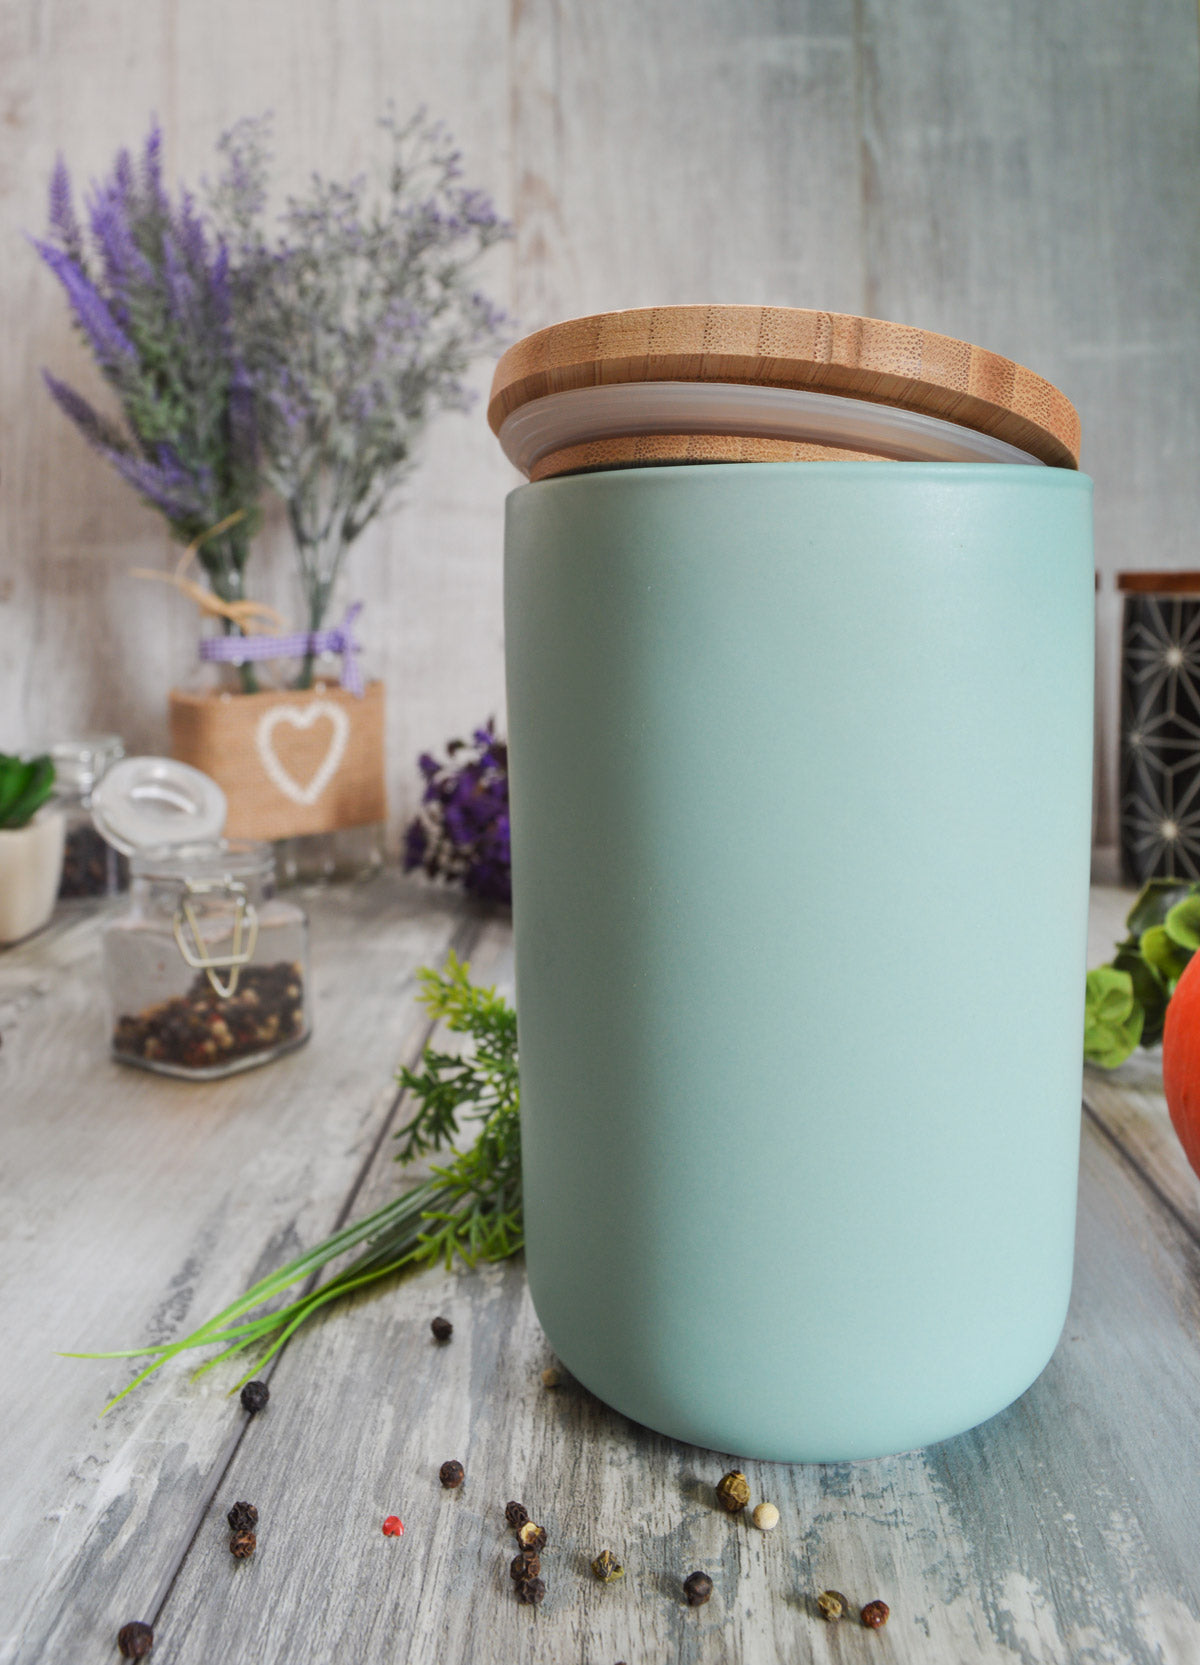 Pot de conservation avec couvercle en bois récipient de conservation en céramique turquoise B-STOCK